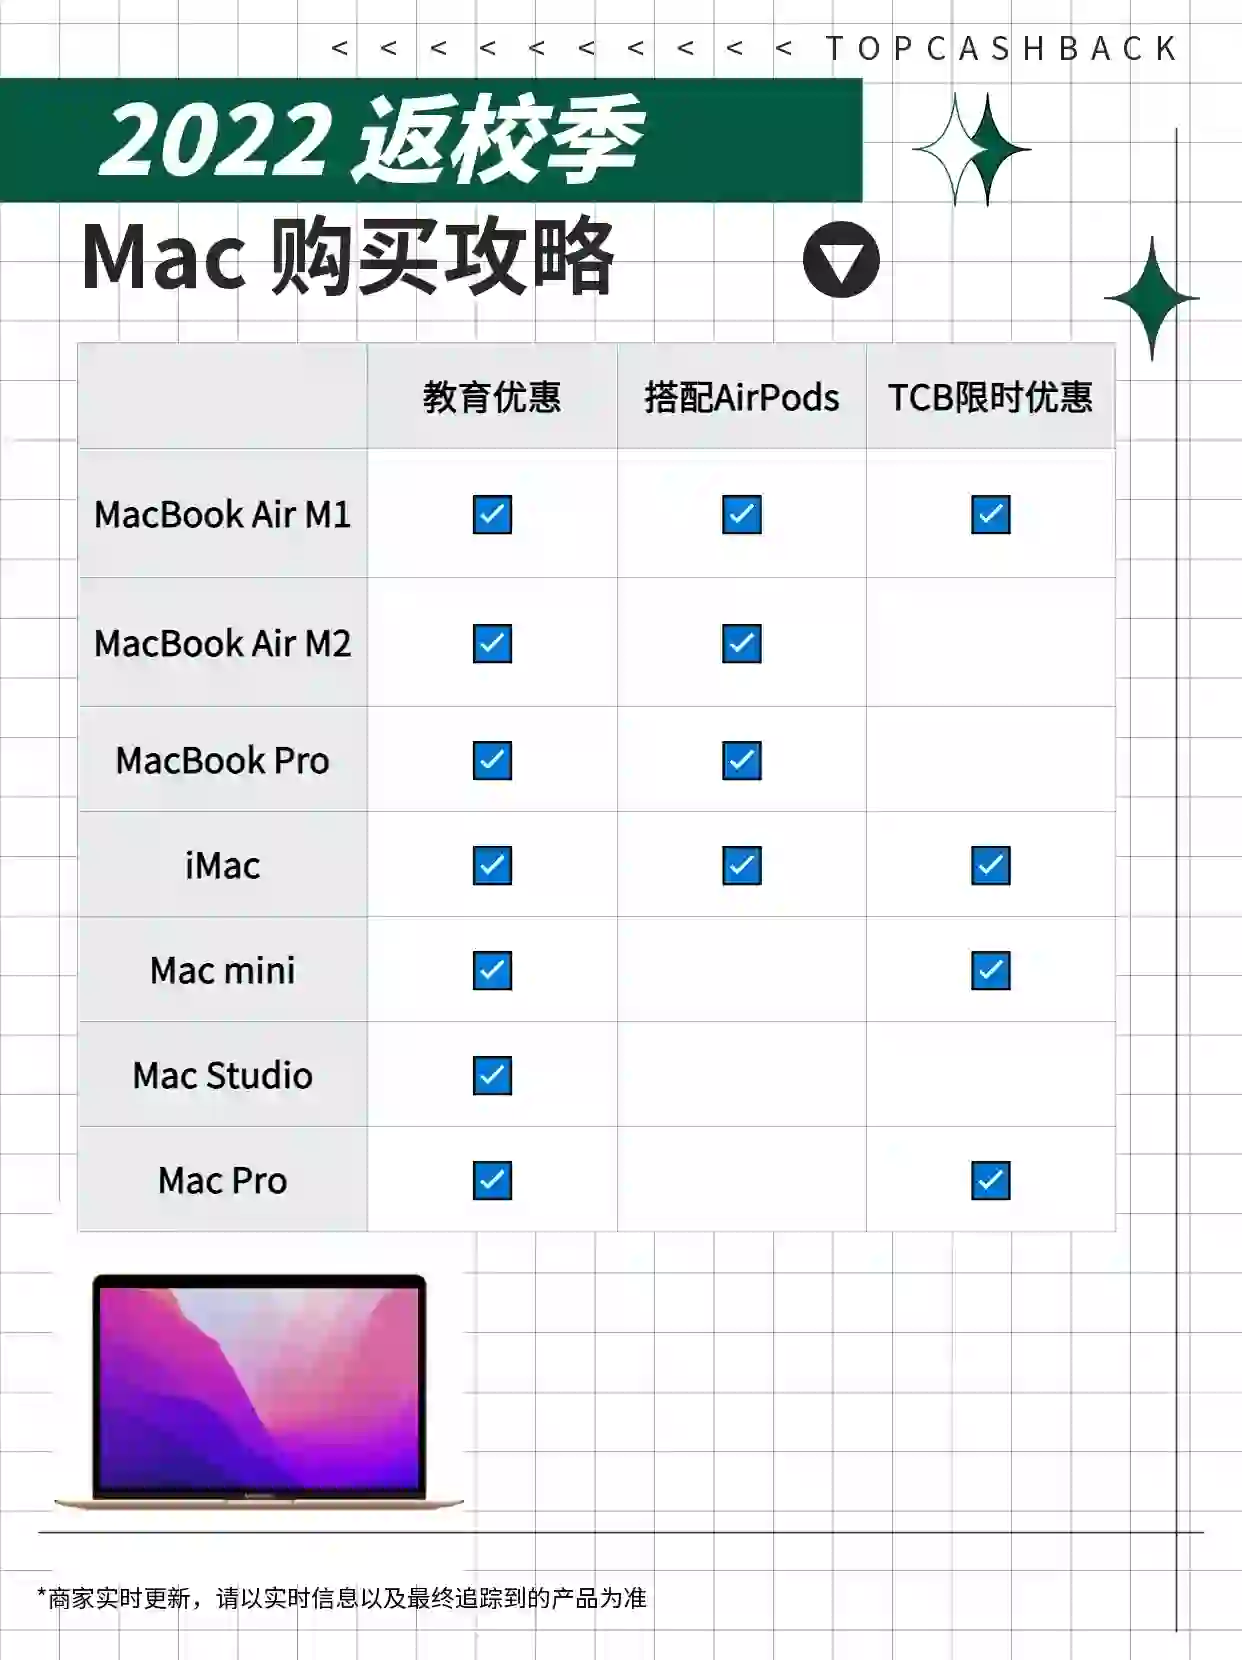 2022年 Apple HK Mac电脑教育优惠返利